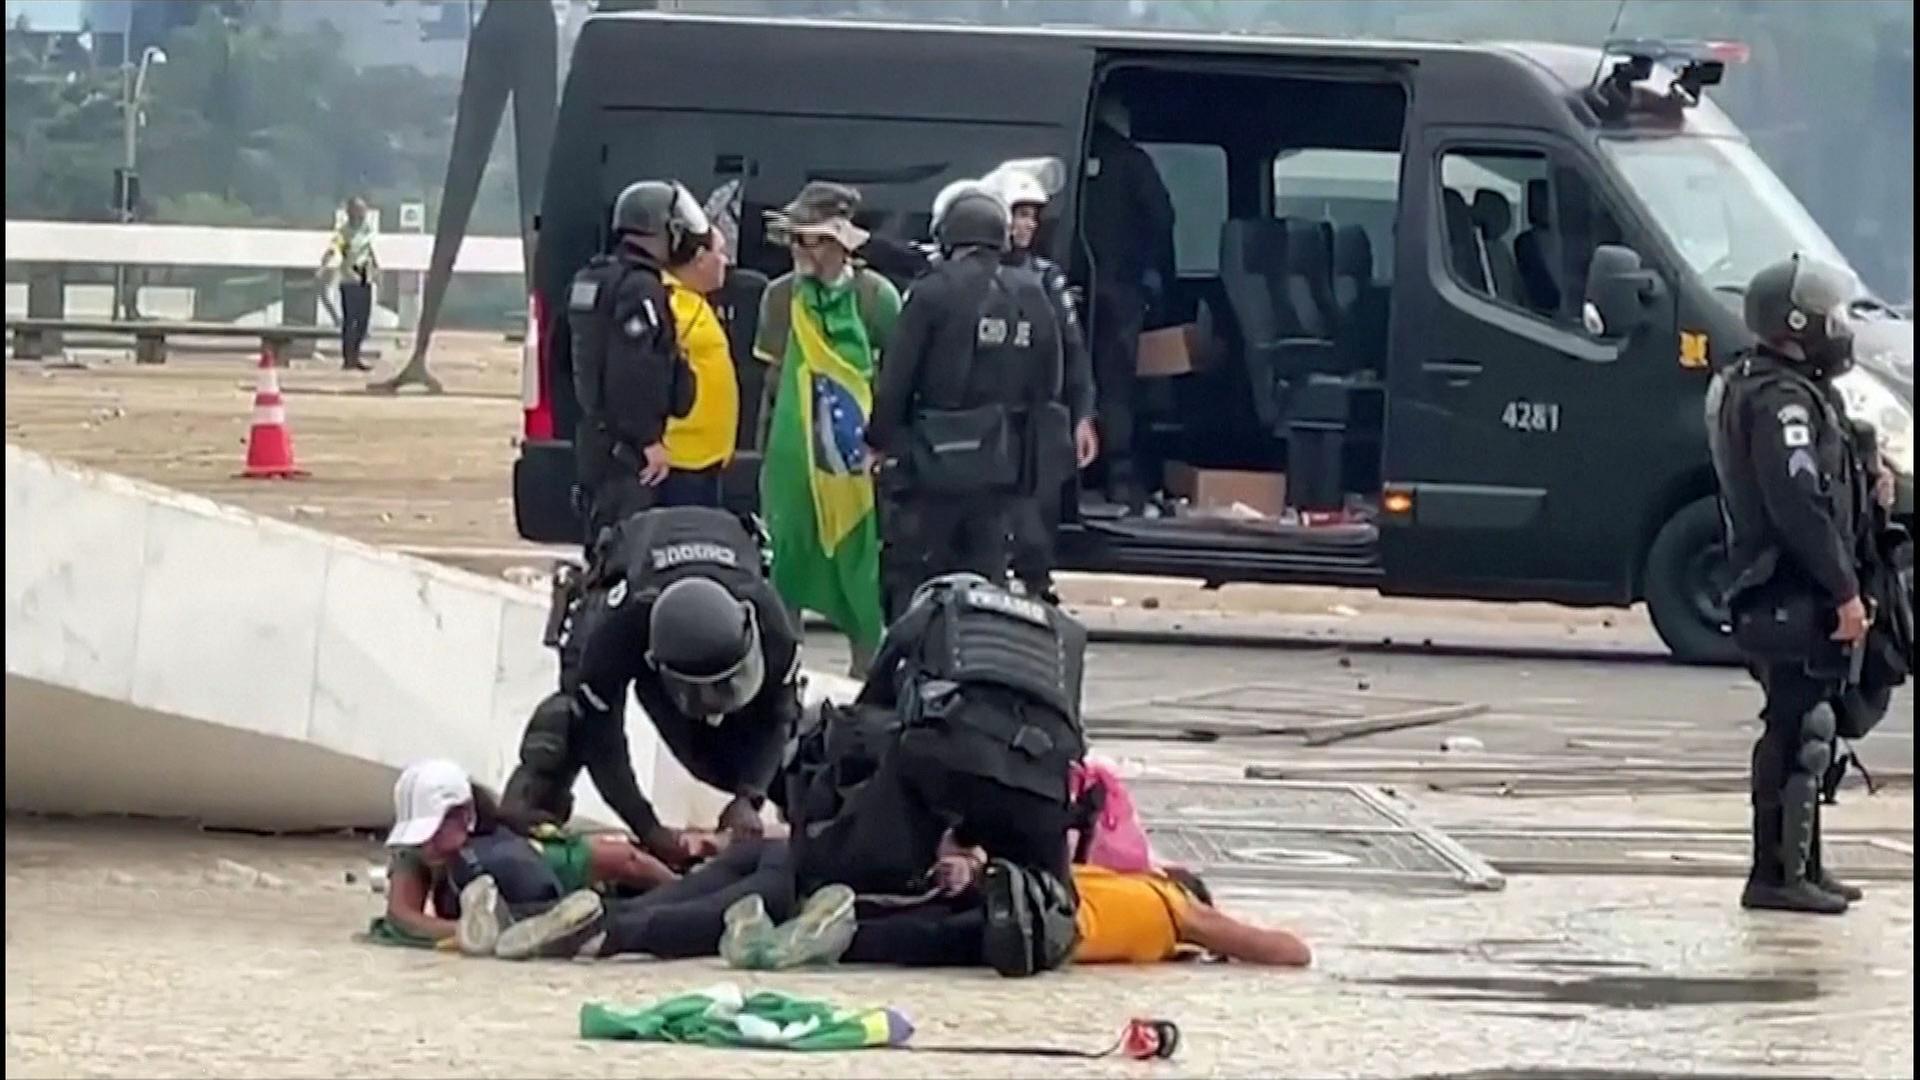 Brasilien: Lula vermutet Bolsonaro-Fans unter Einsatzkräften - ZDFheute